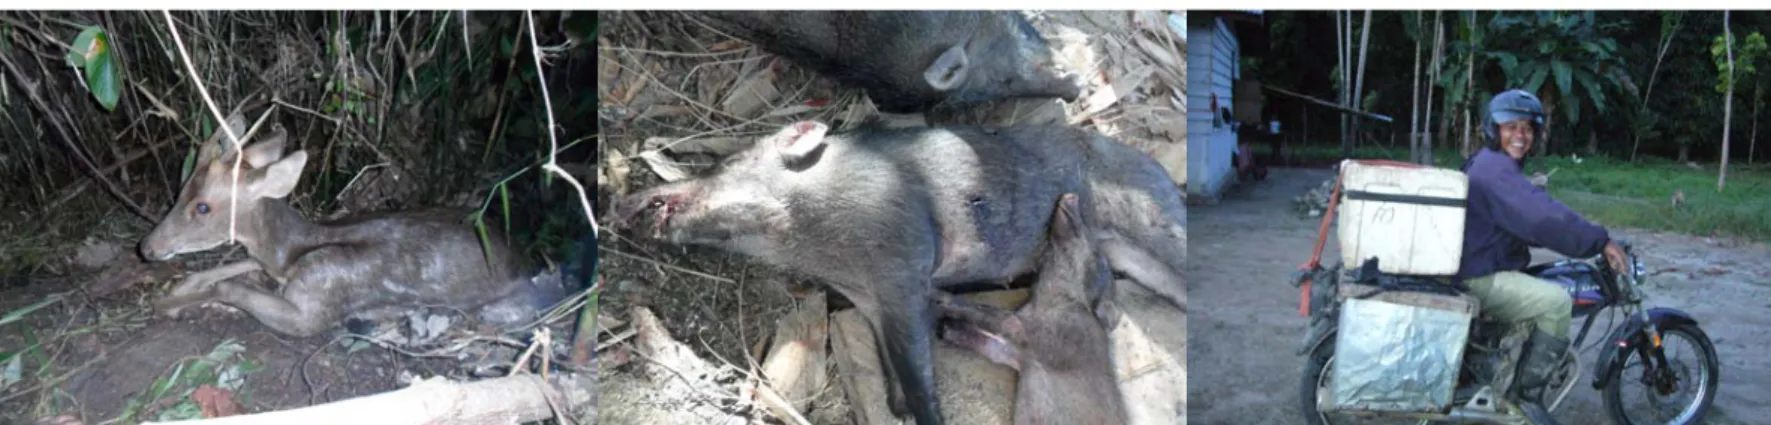 Gambar 3a. Rusa yang terkena jerat pemburu Gambar 3b. Babi hutan hasil buruan Gambar 4